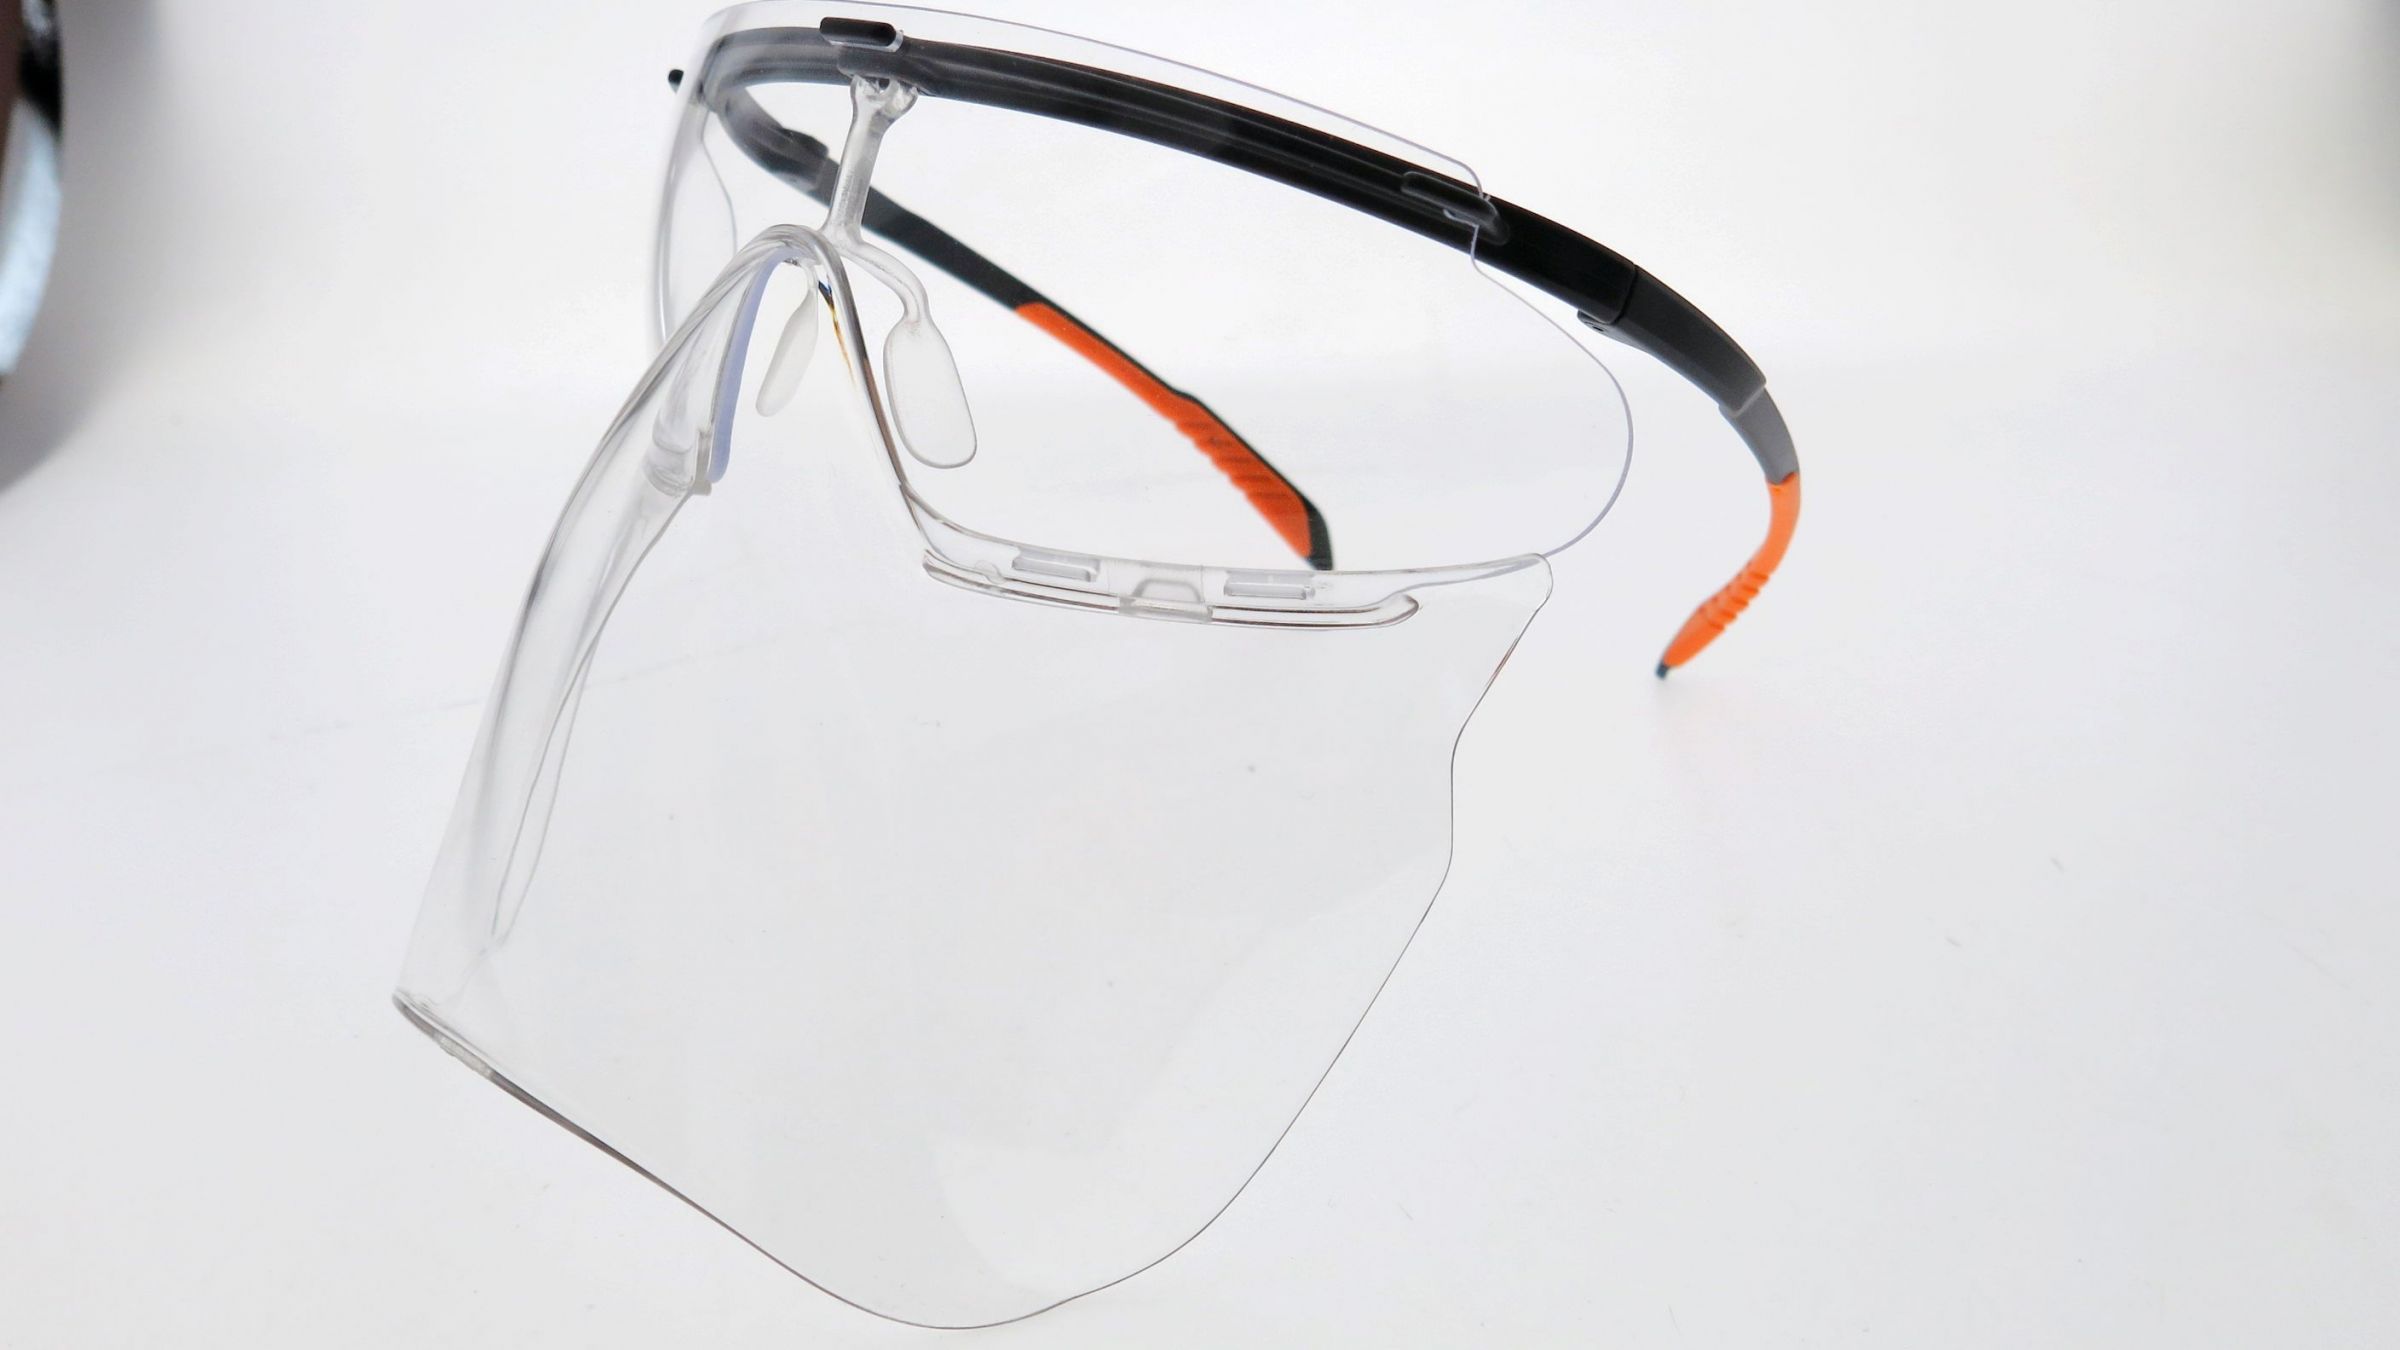 Medical faceshield eyewear
(Made in China)